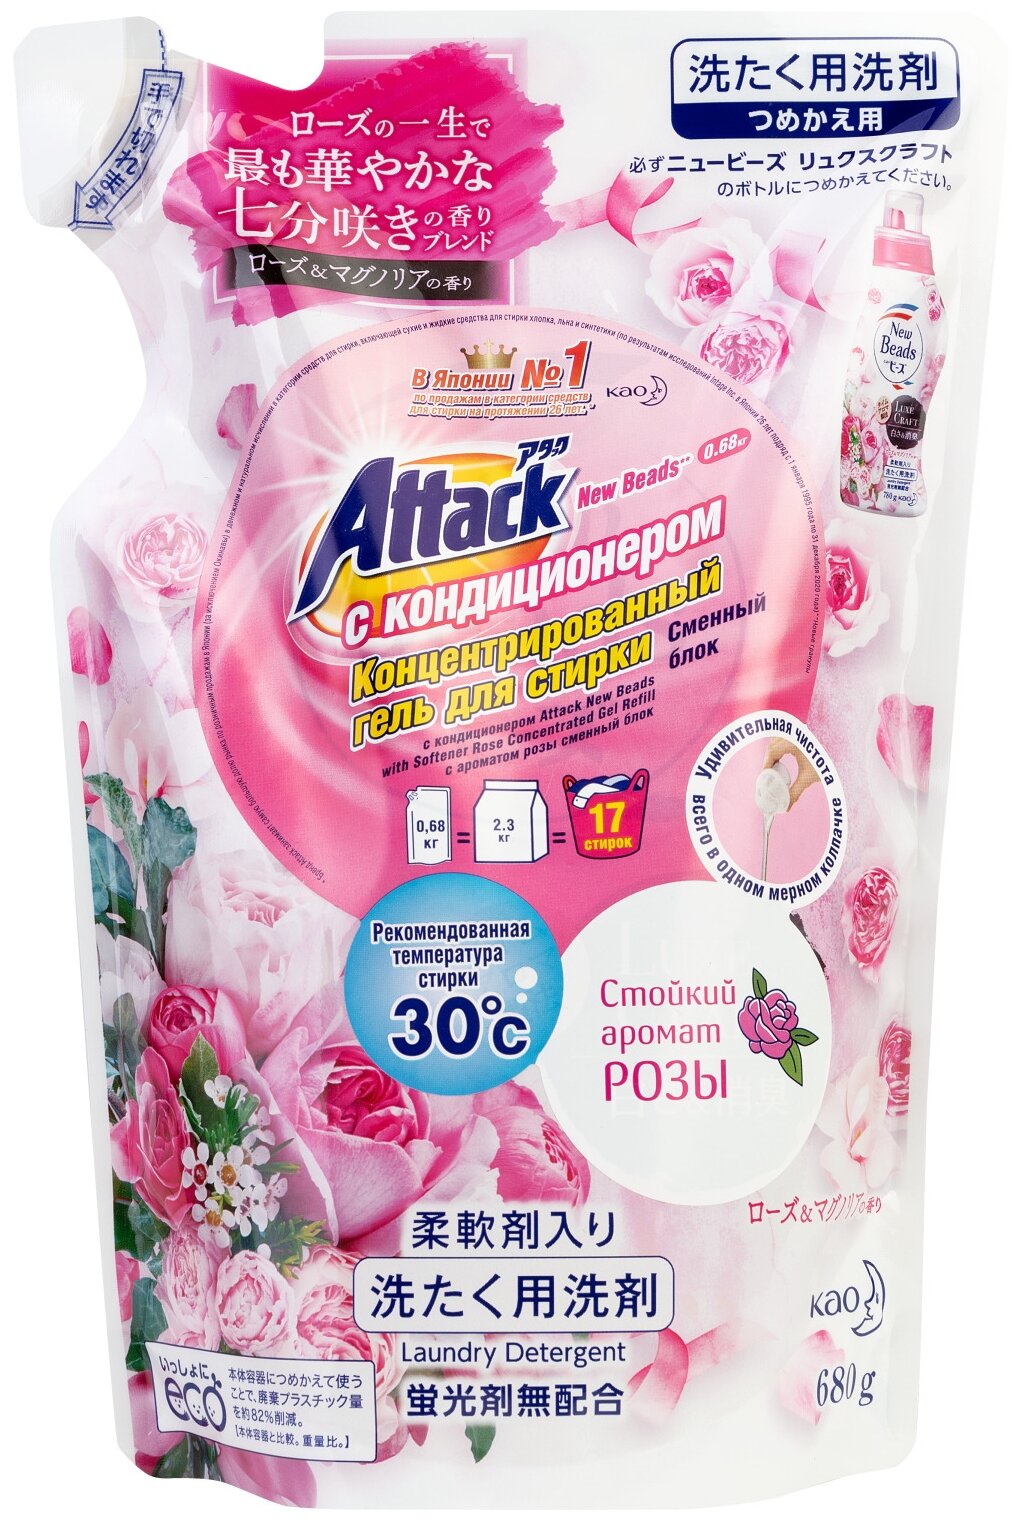 Гель для стирки Kao Attack New Beads Fragrance с ароматом роз, 0.68 л, 0.68 кг, дой-пак